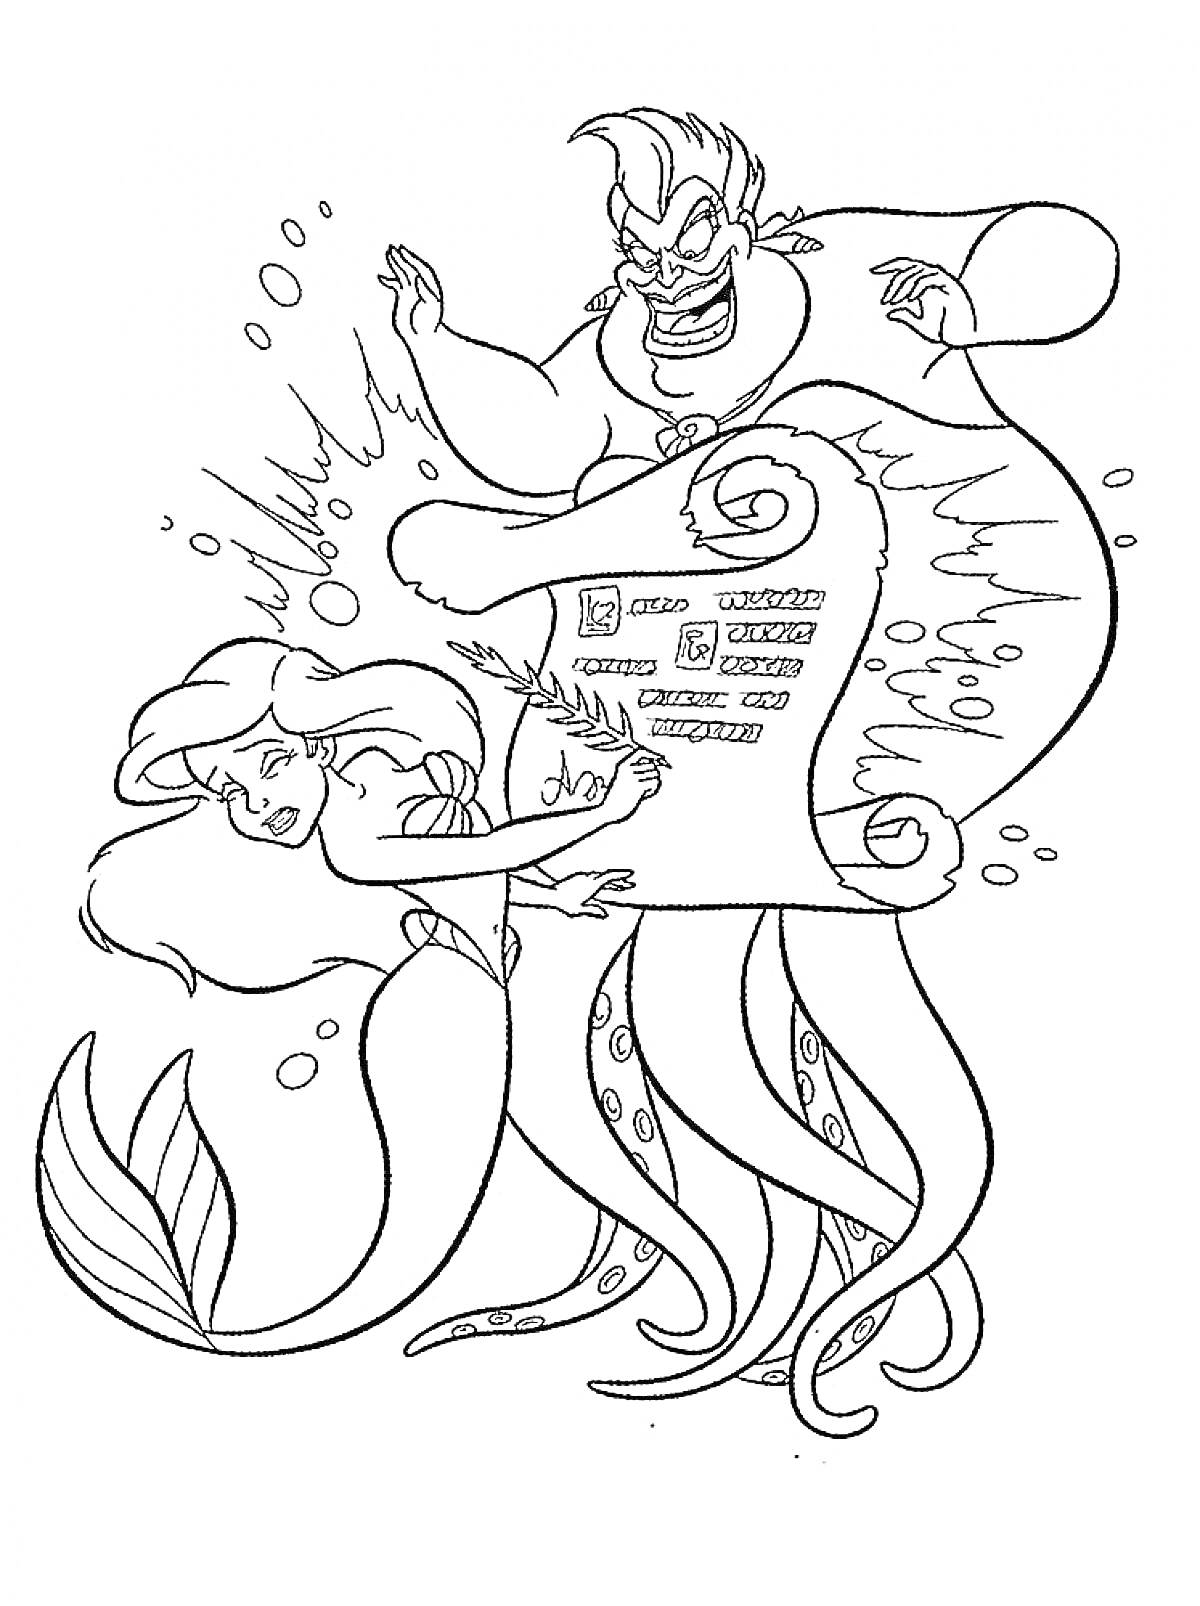 РаскраскаАриэль и Урсула с магическим свитком под водой